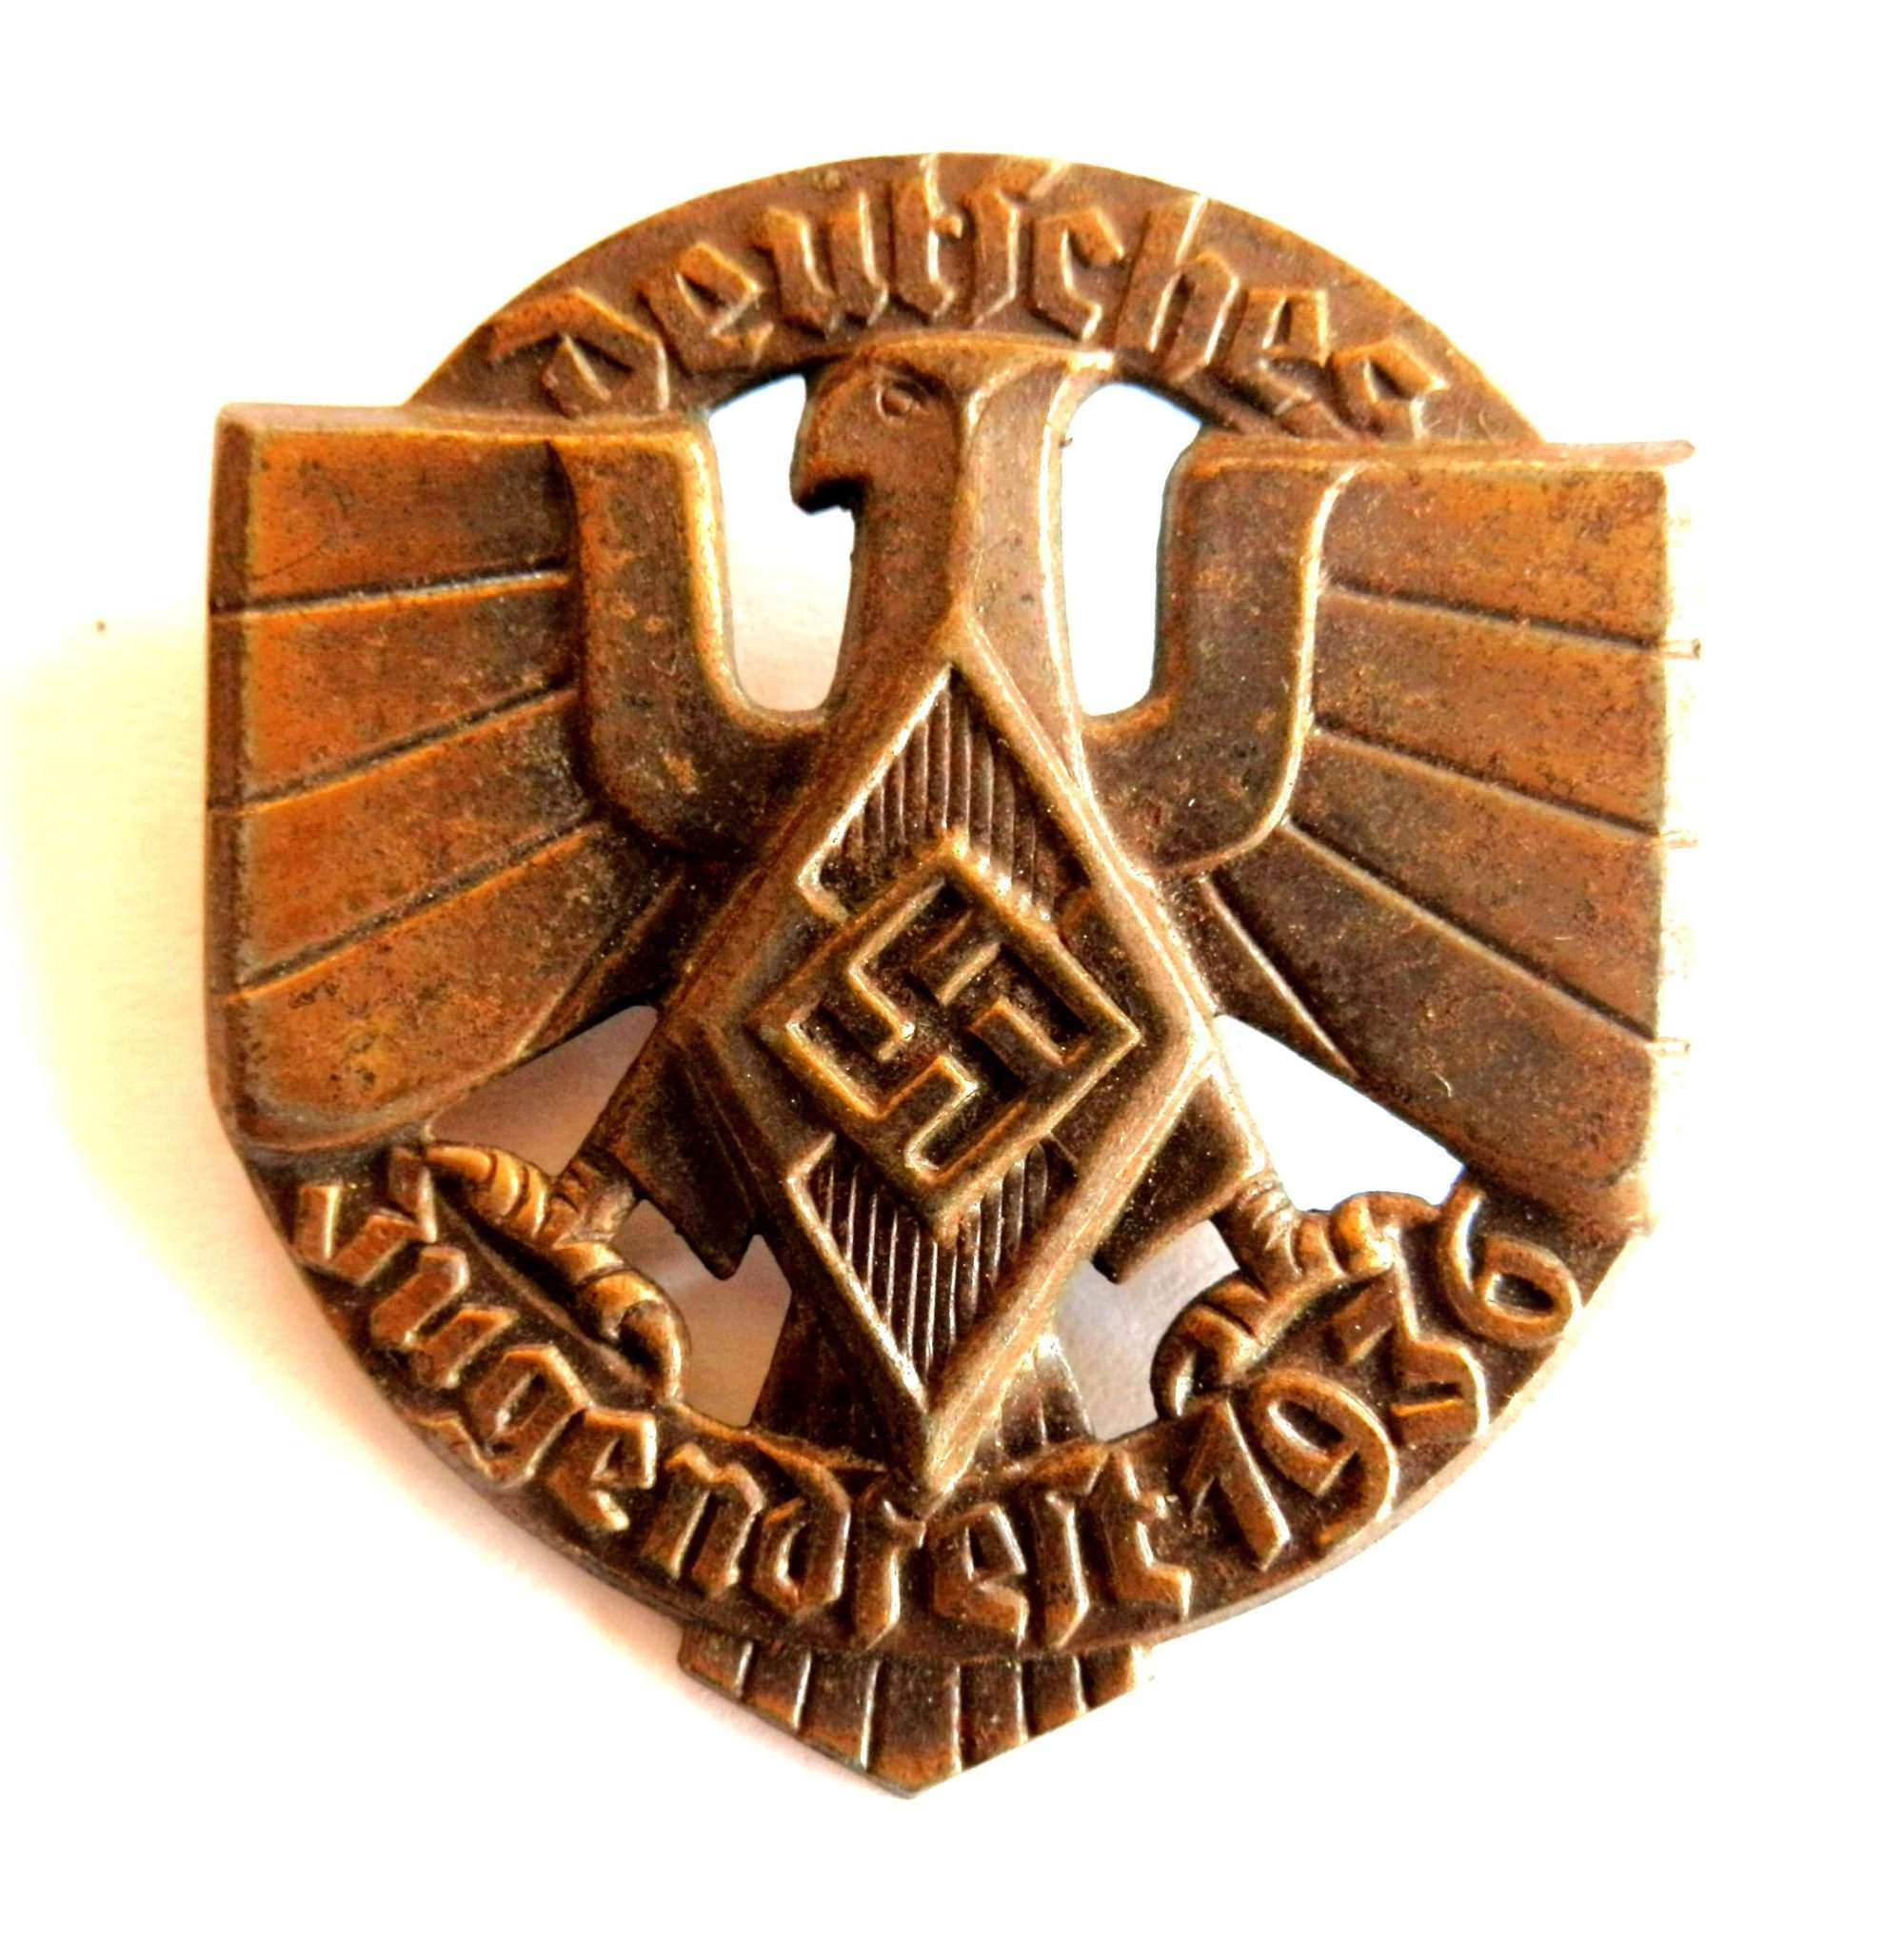 German Jugendfest 1936, Hitler Youth Sports Badge.